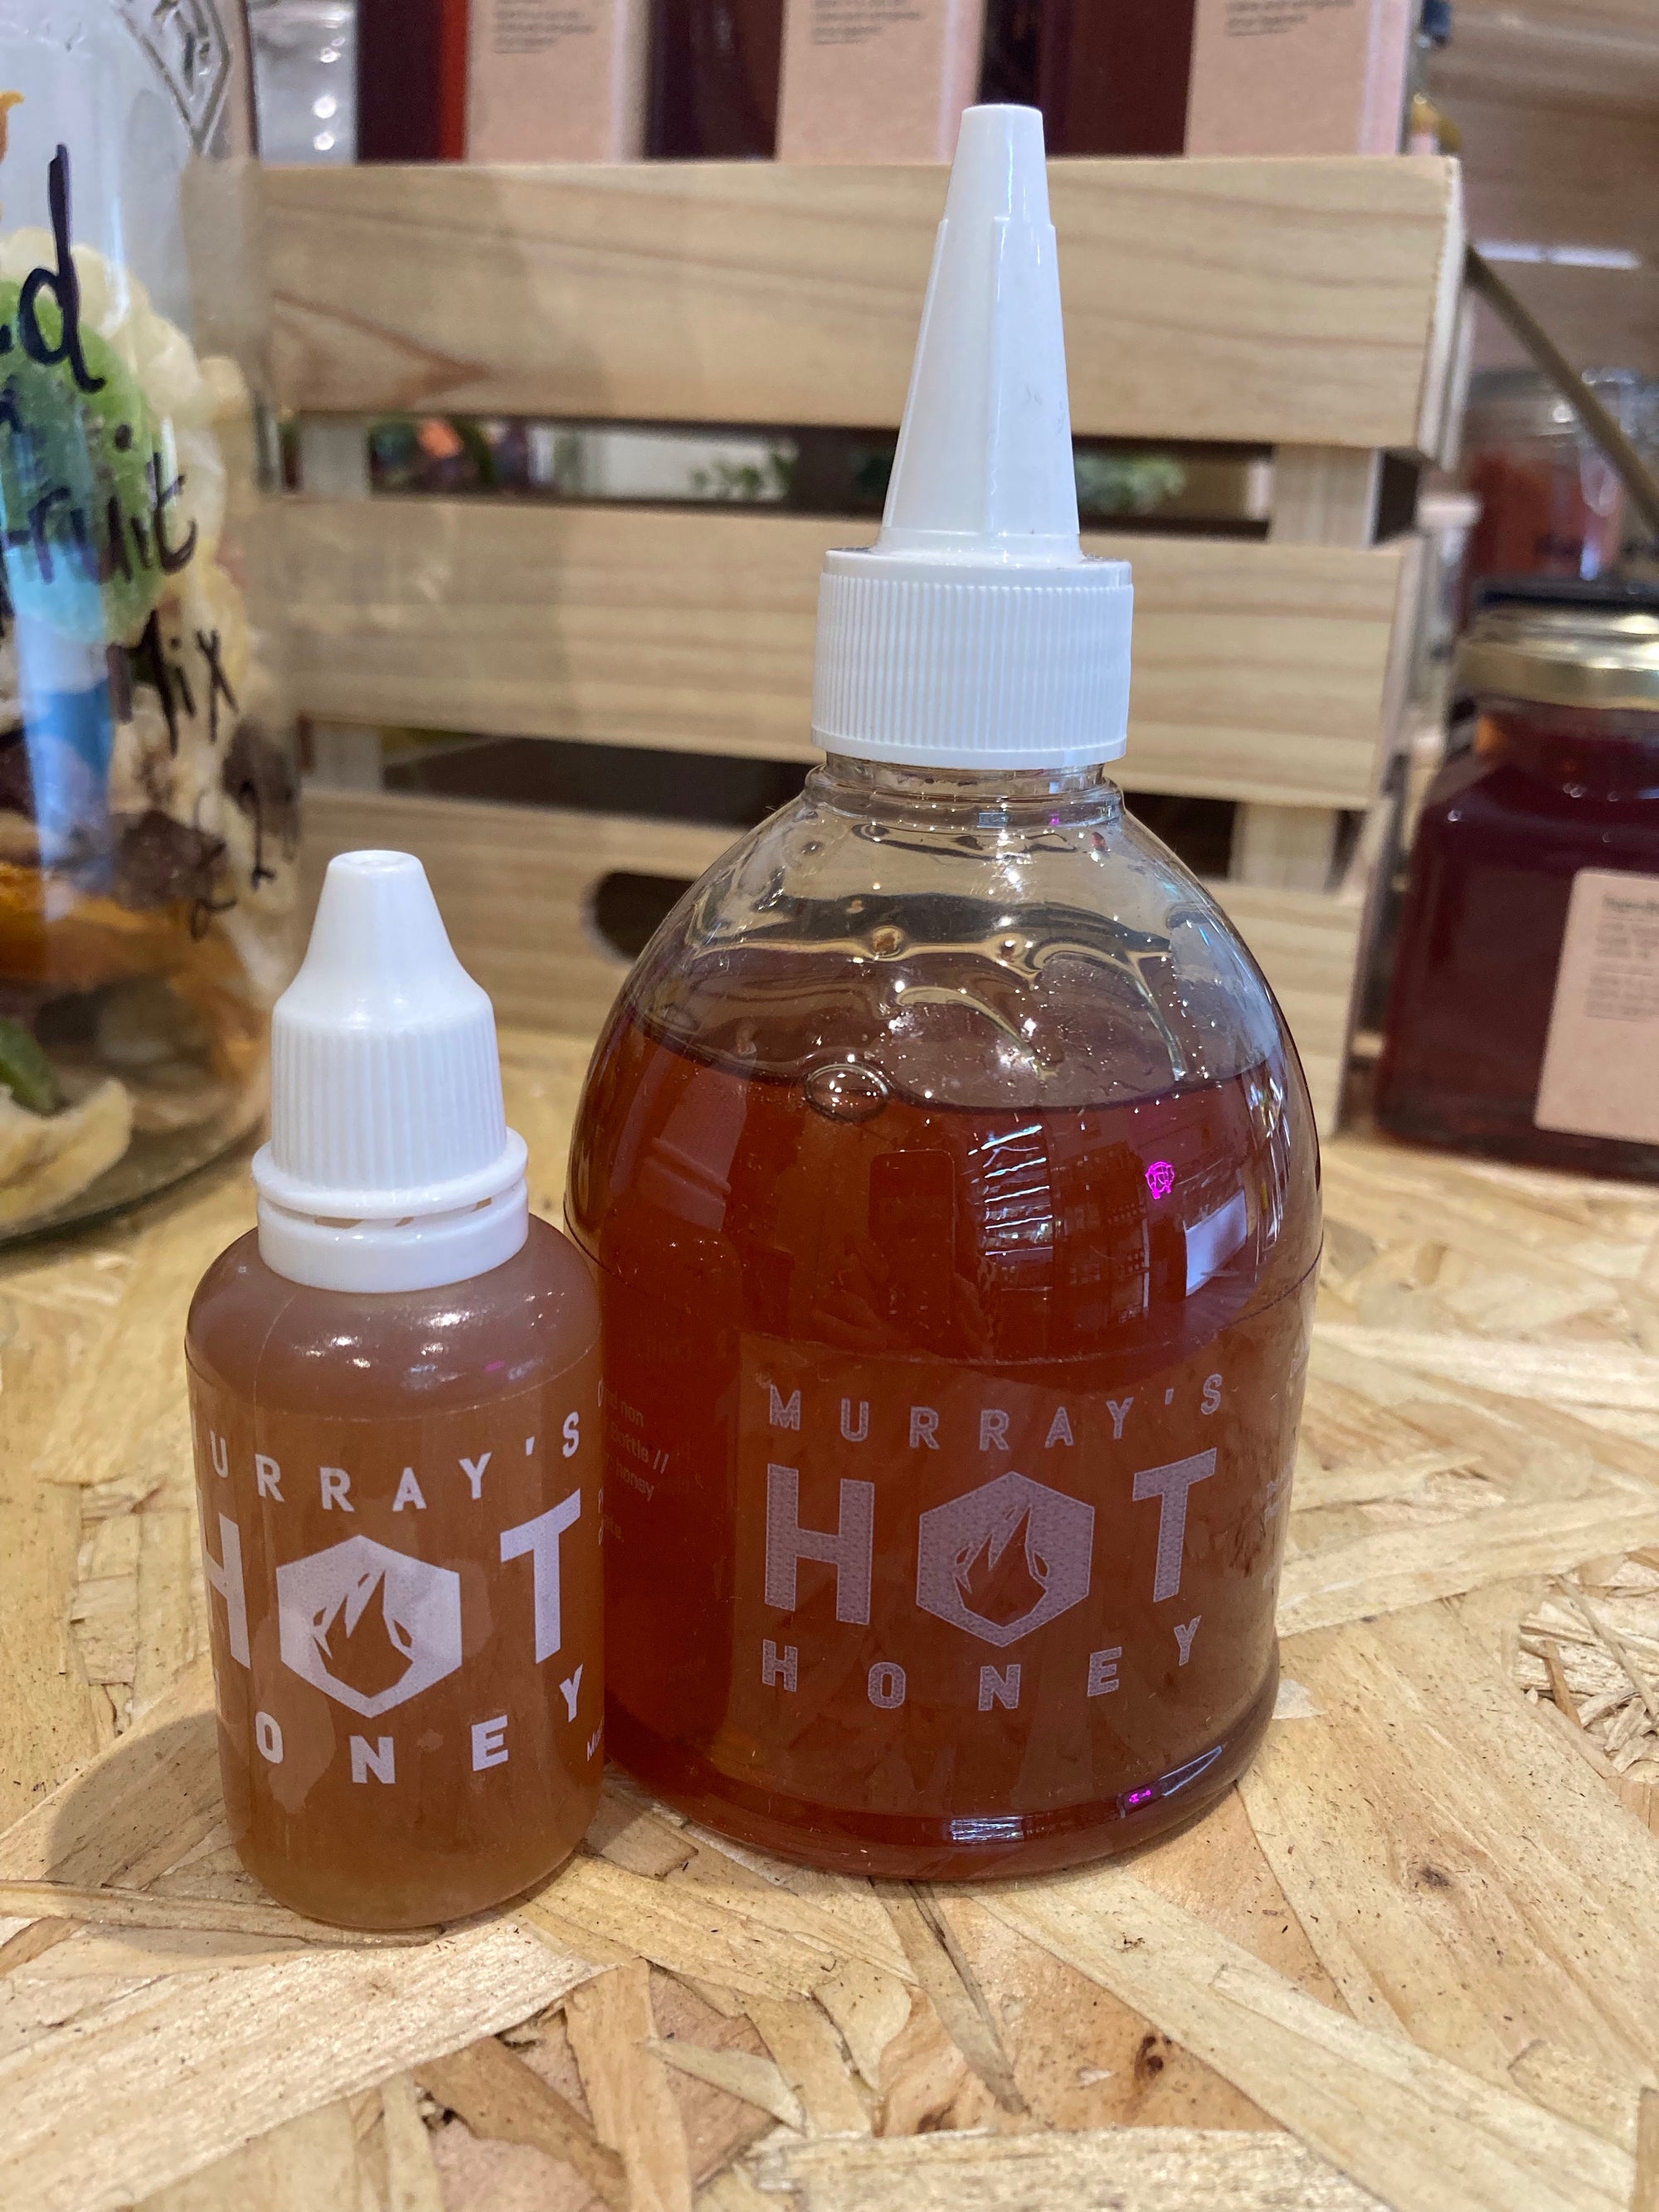 Murray’s Hot Honey